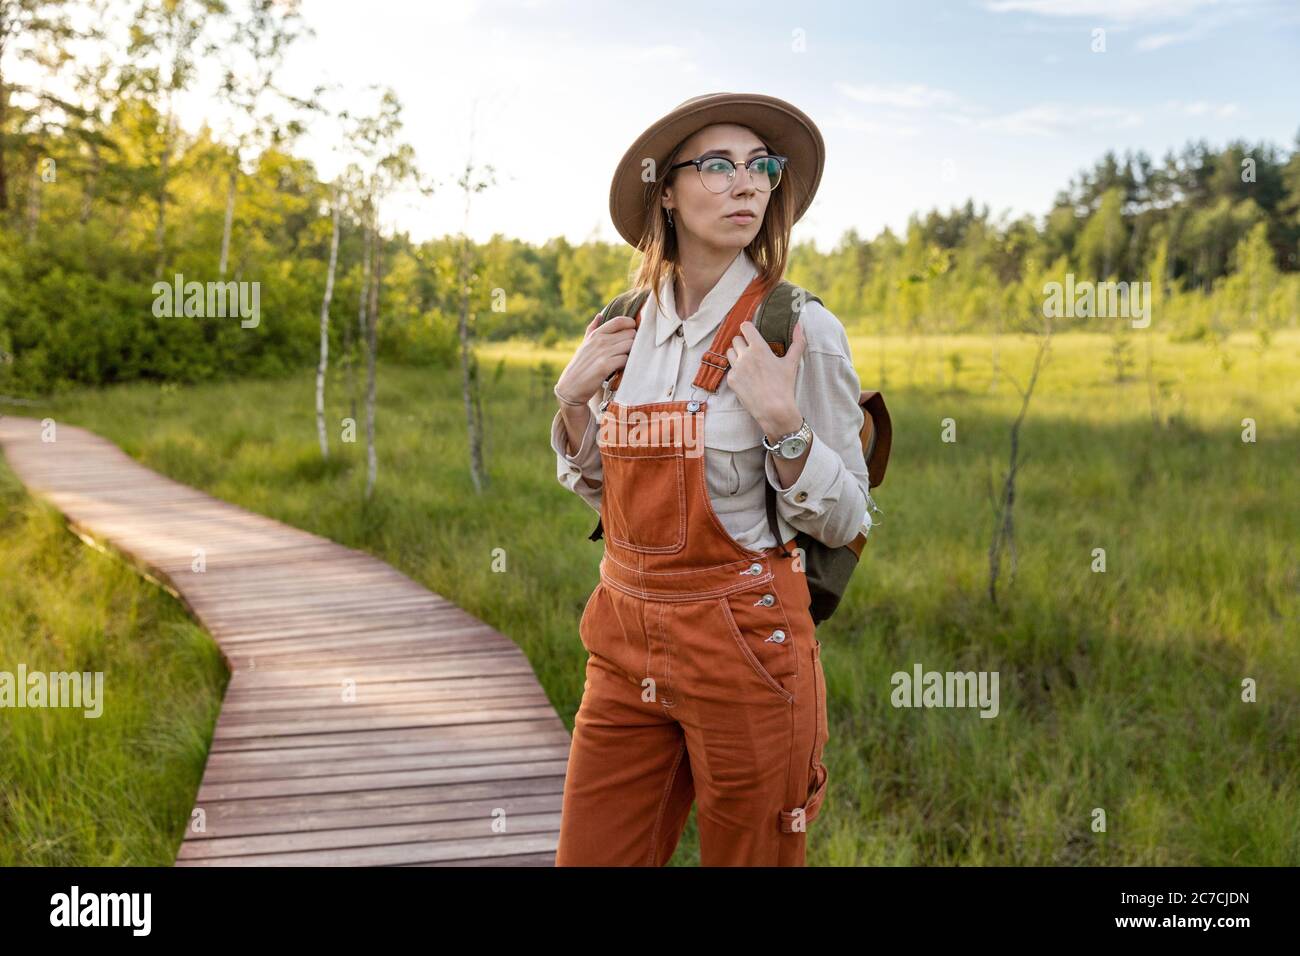 Ritratto di donna botanica con zaino su sentiero ecologico escursionistico in estate. Naturalista esplorando la fauna selvatica e avventura ecoturismo camminando sul sentiero Foto Stock